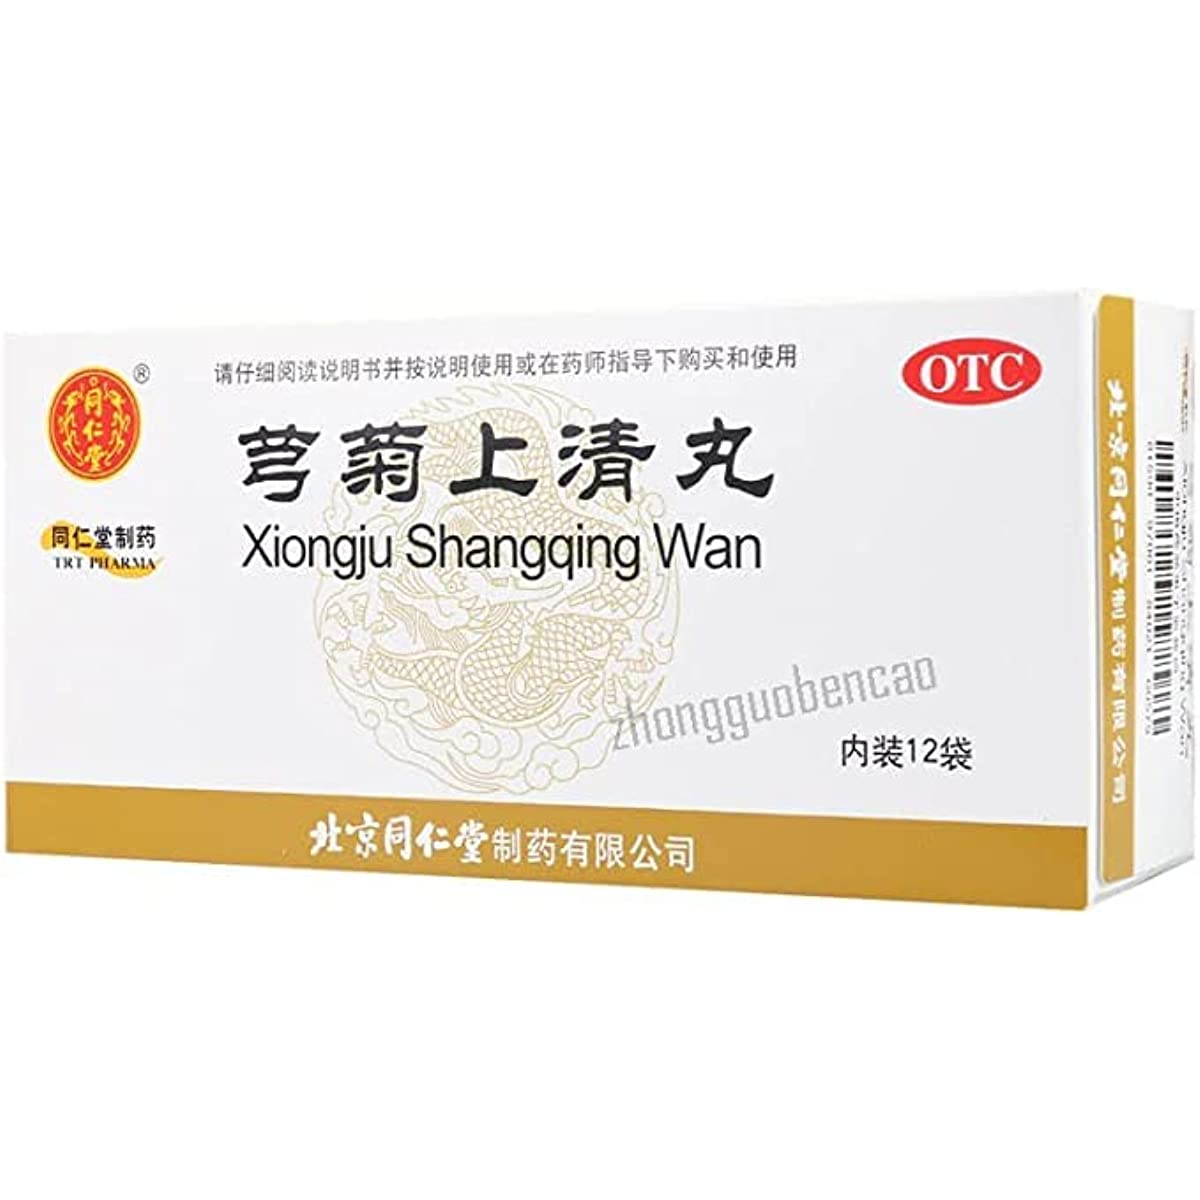 1 Box, Xiongju Shangqing Wan 12 Bags / Box 芎菊上清丸